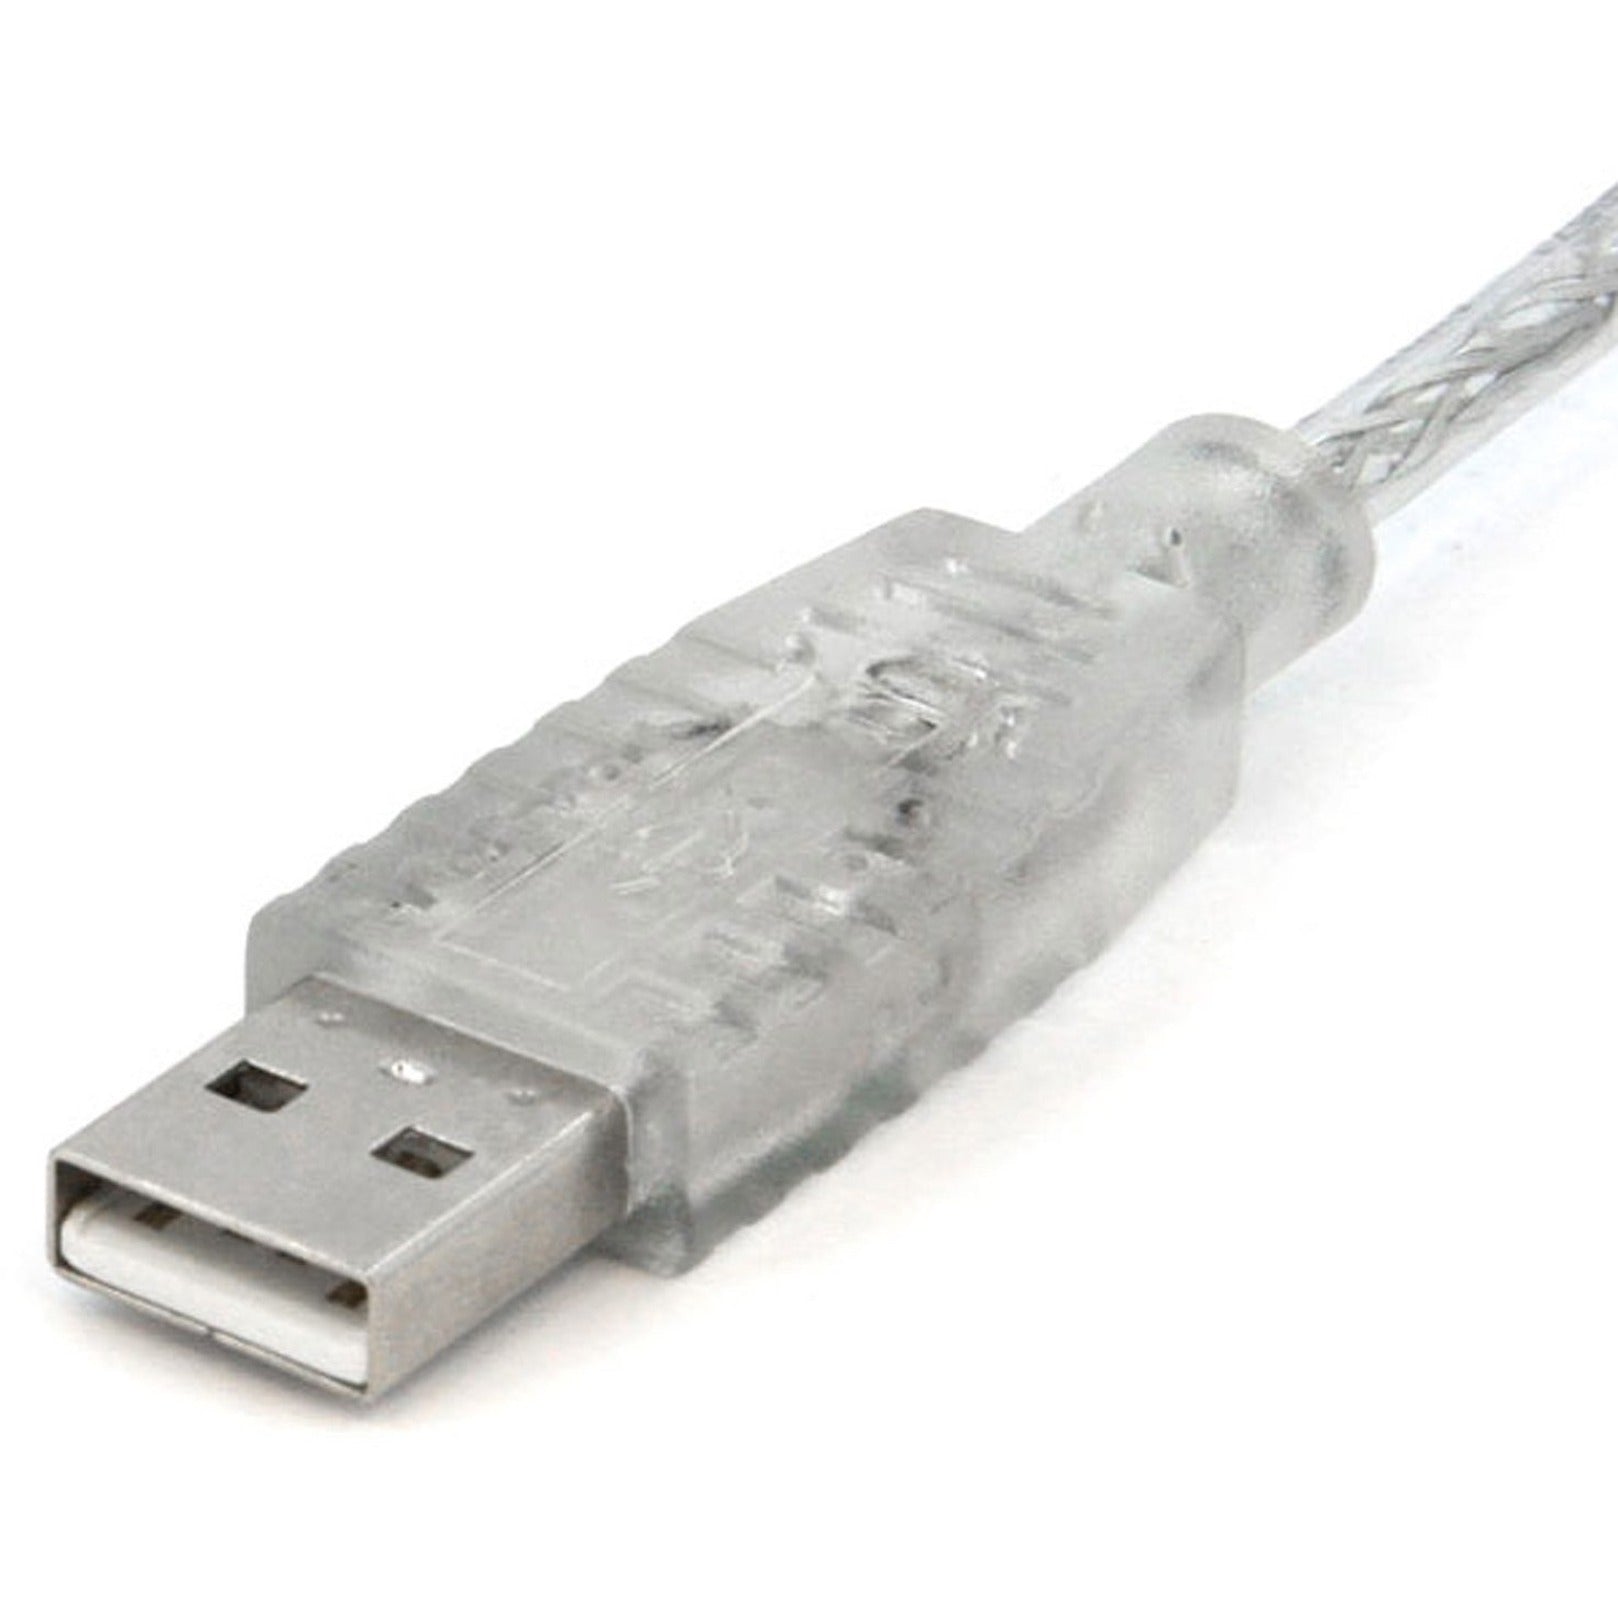 StarTech.com. Transparente Cable USB 2.0 10 ft Cable de Transferencia de Datos.